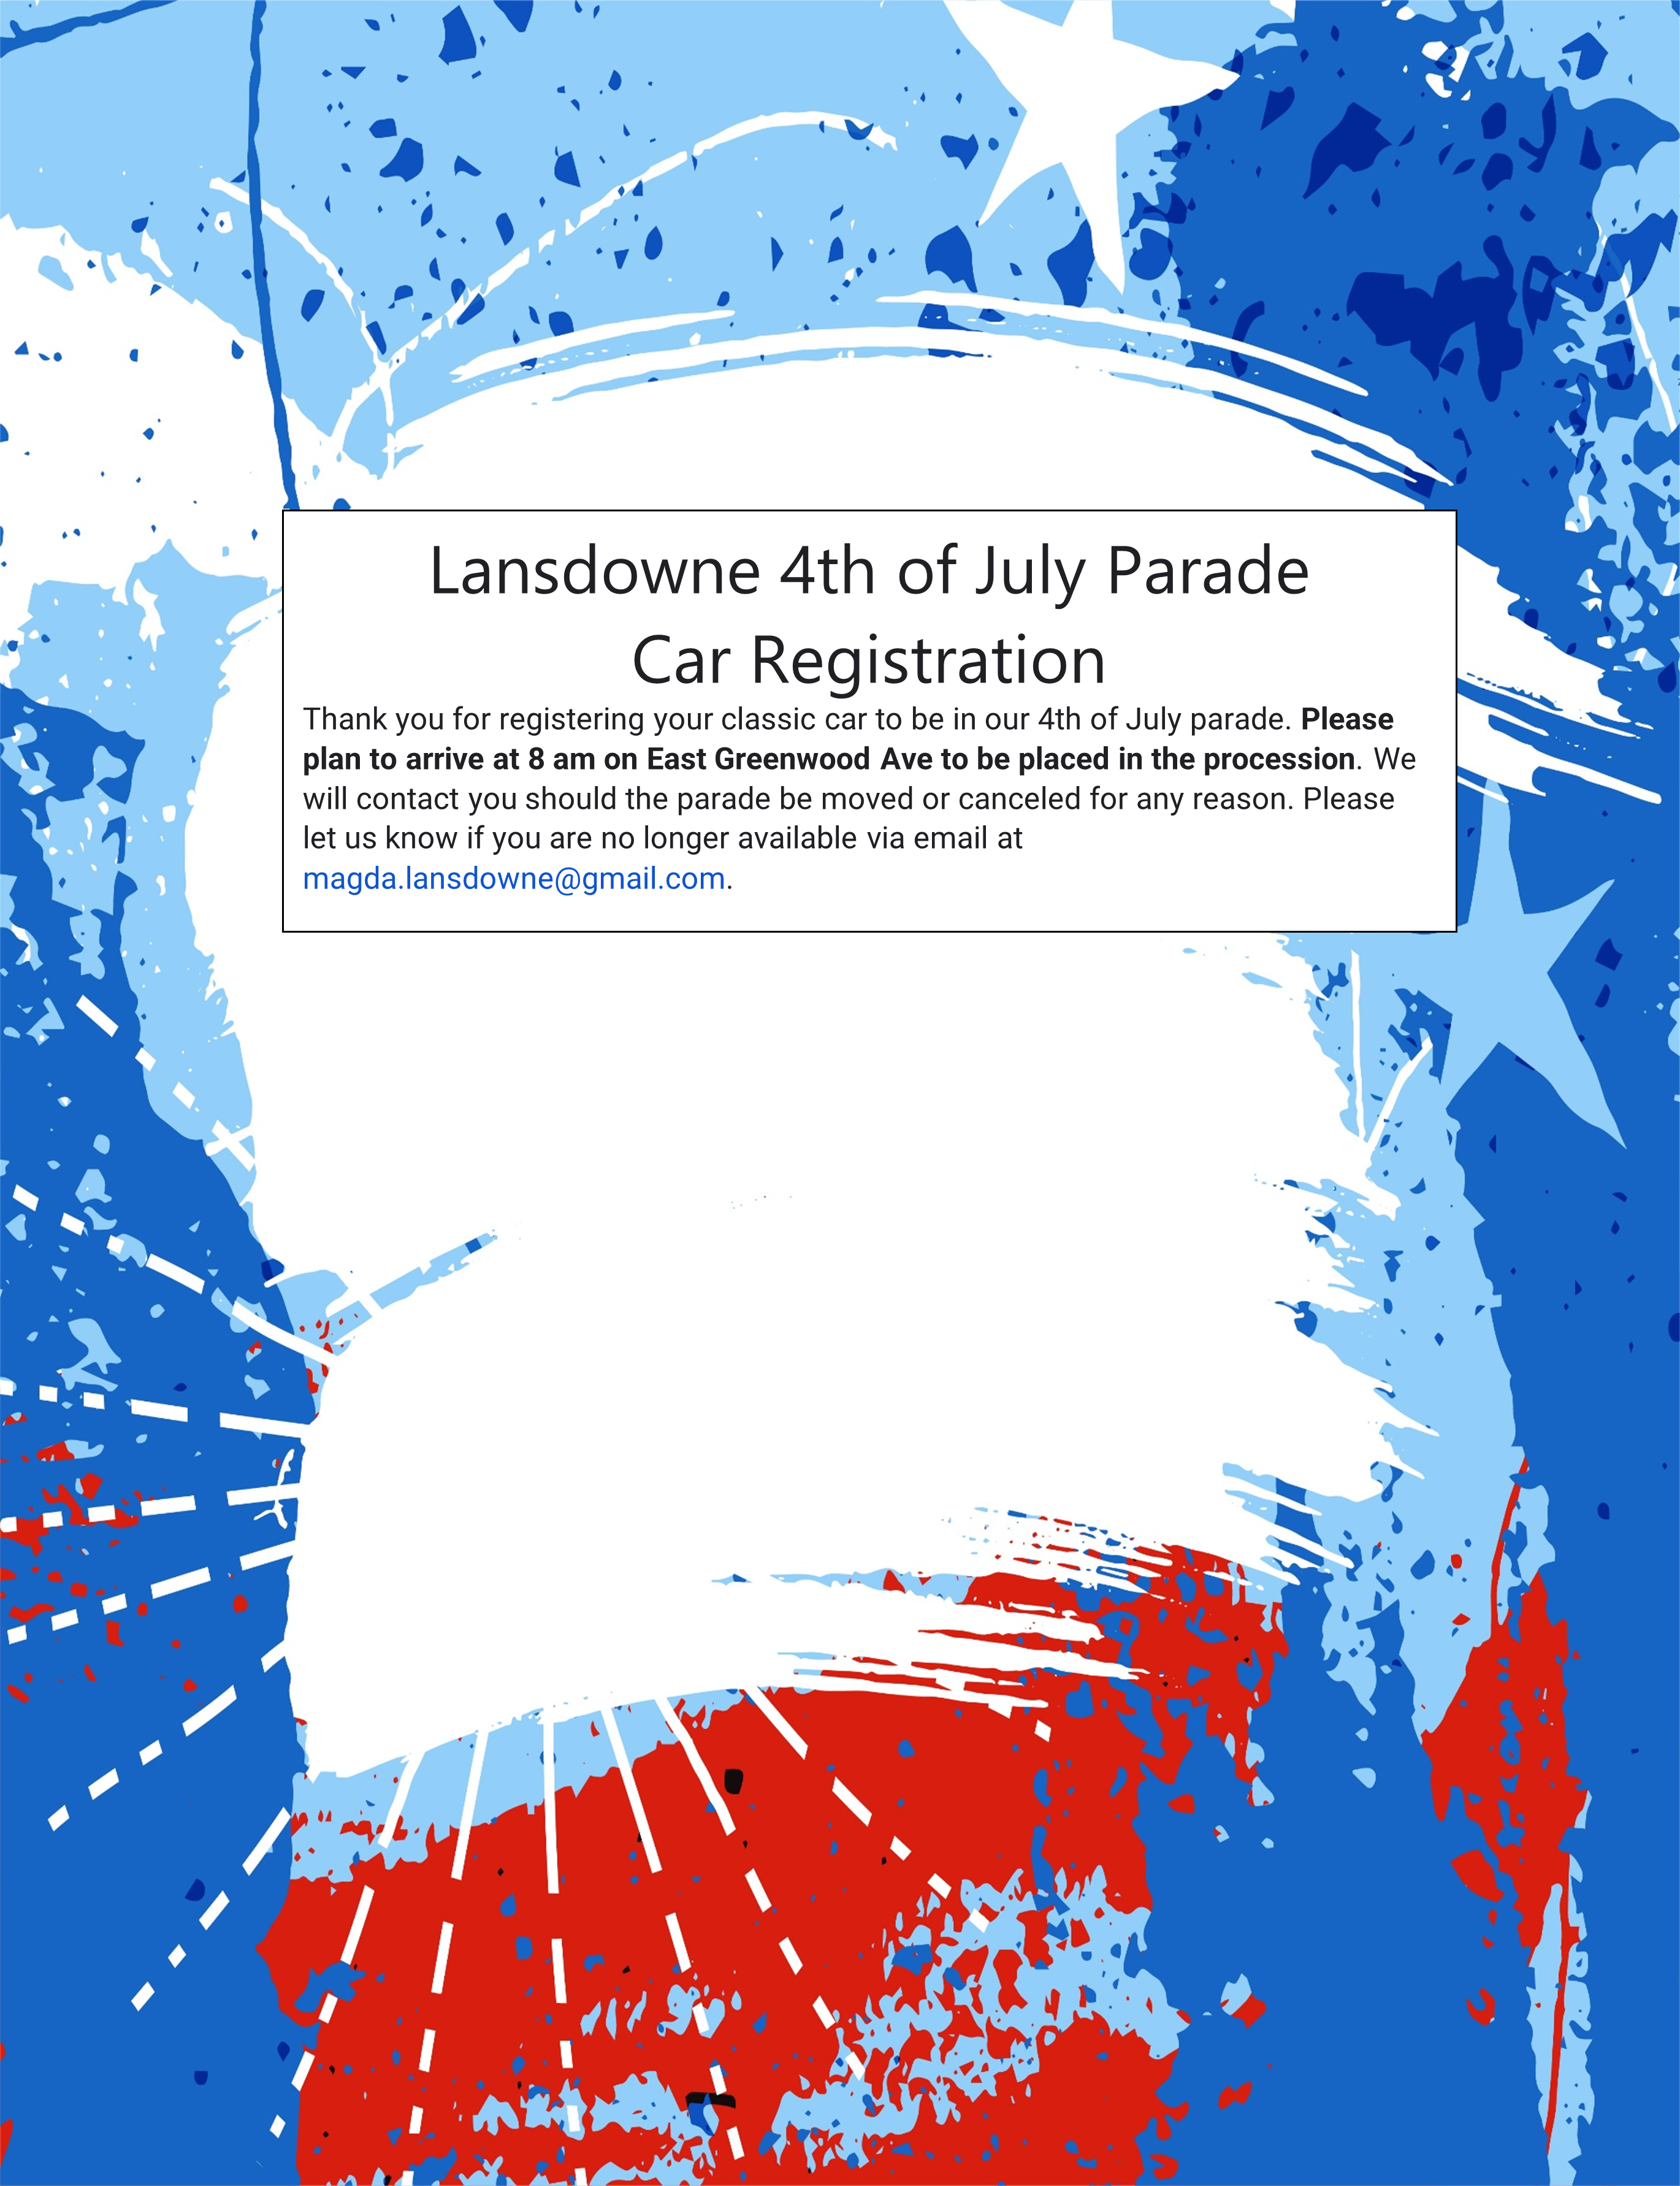 Lansdown 4th of July Parade